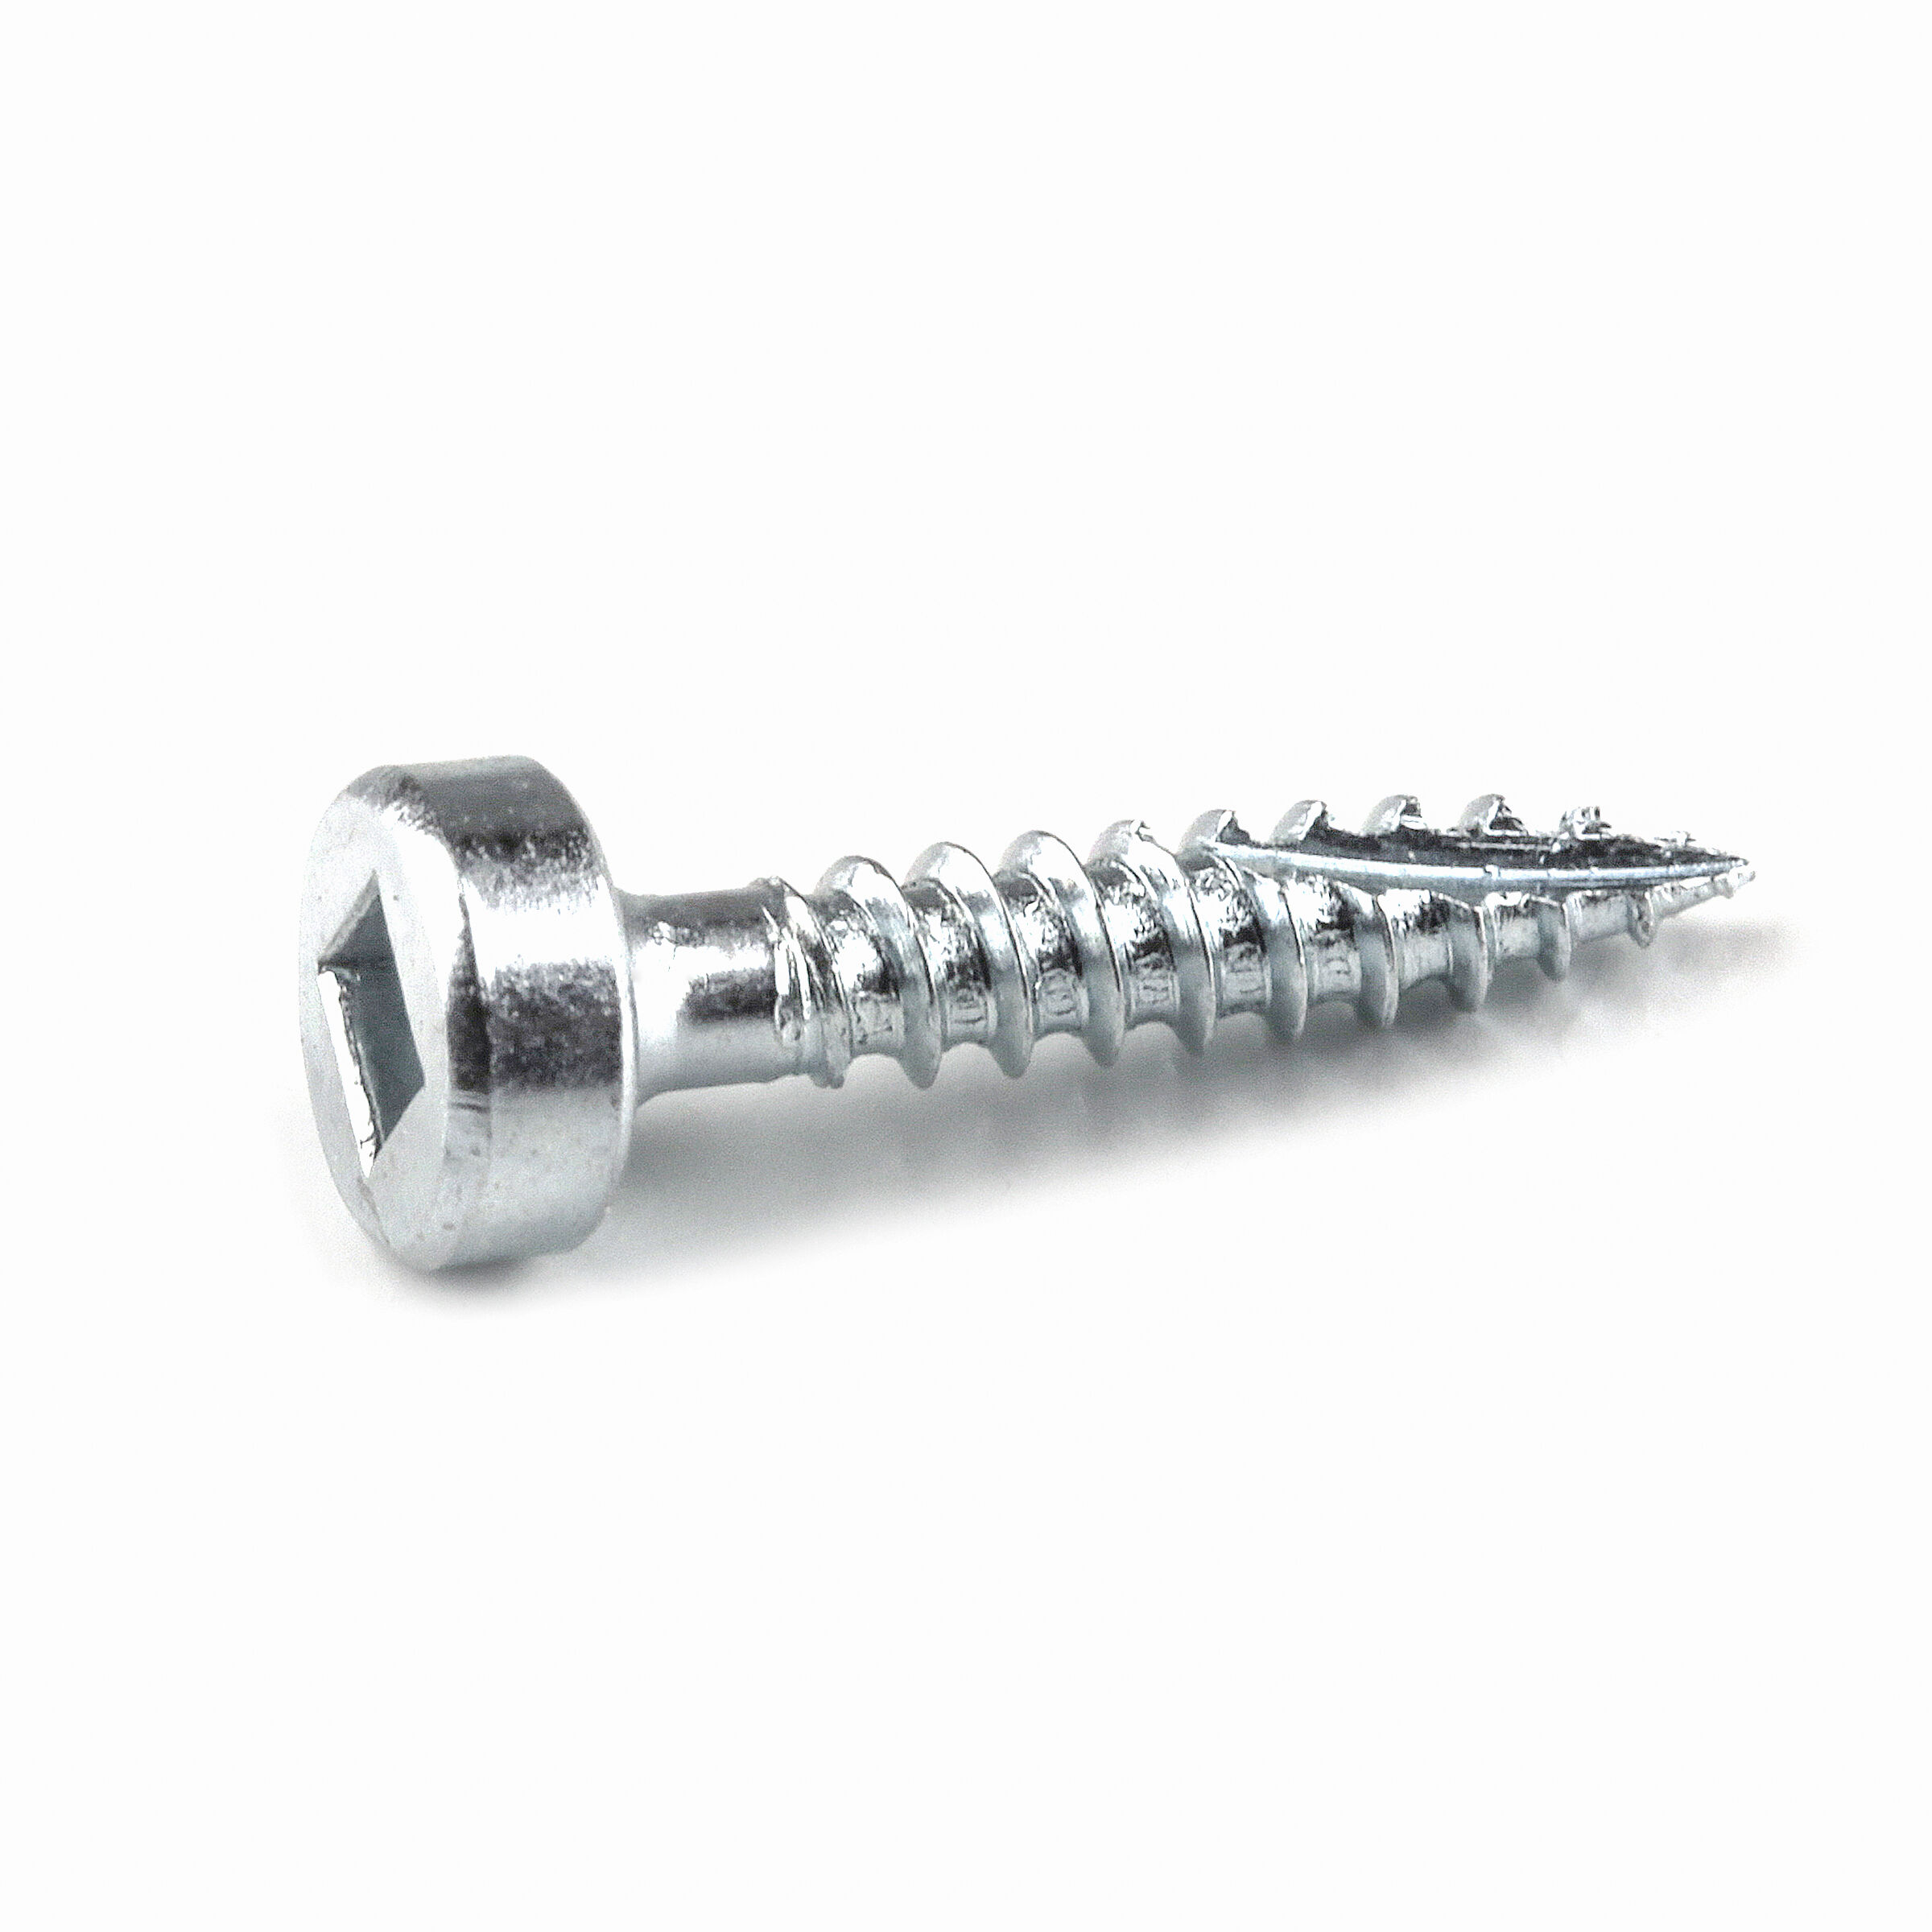 Kreg SMLC125250 11/4 Coarse Thread Number 8 Zinc Coated Pocket Hole Screws for sale online 